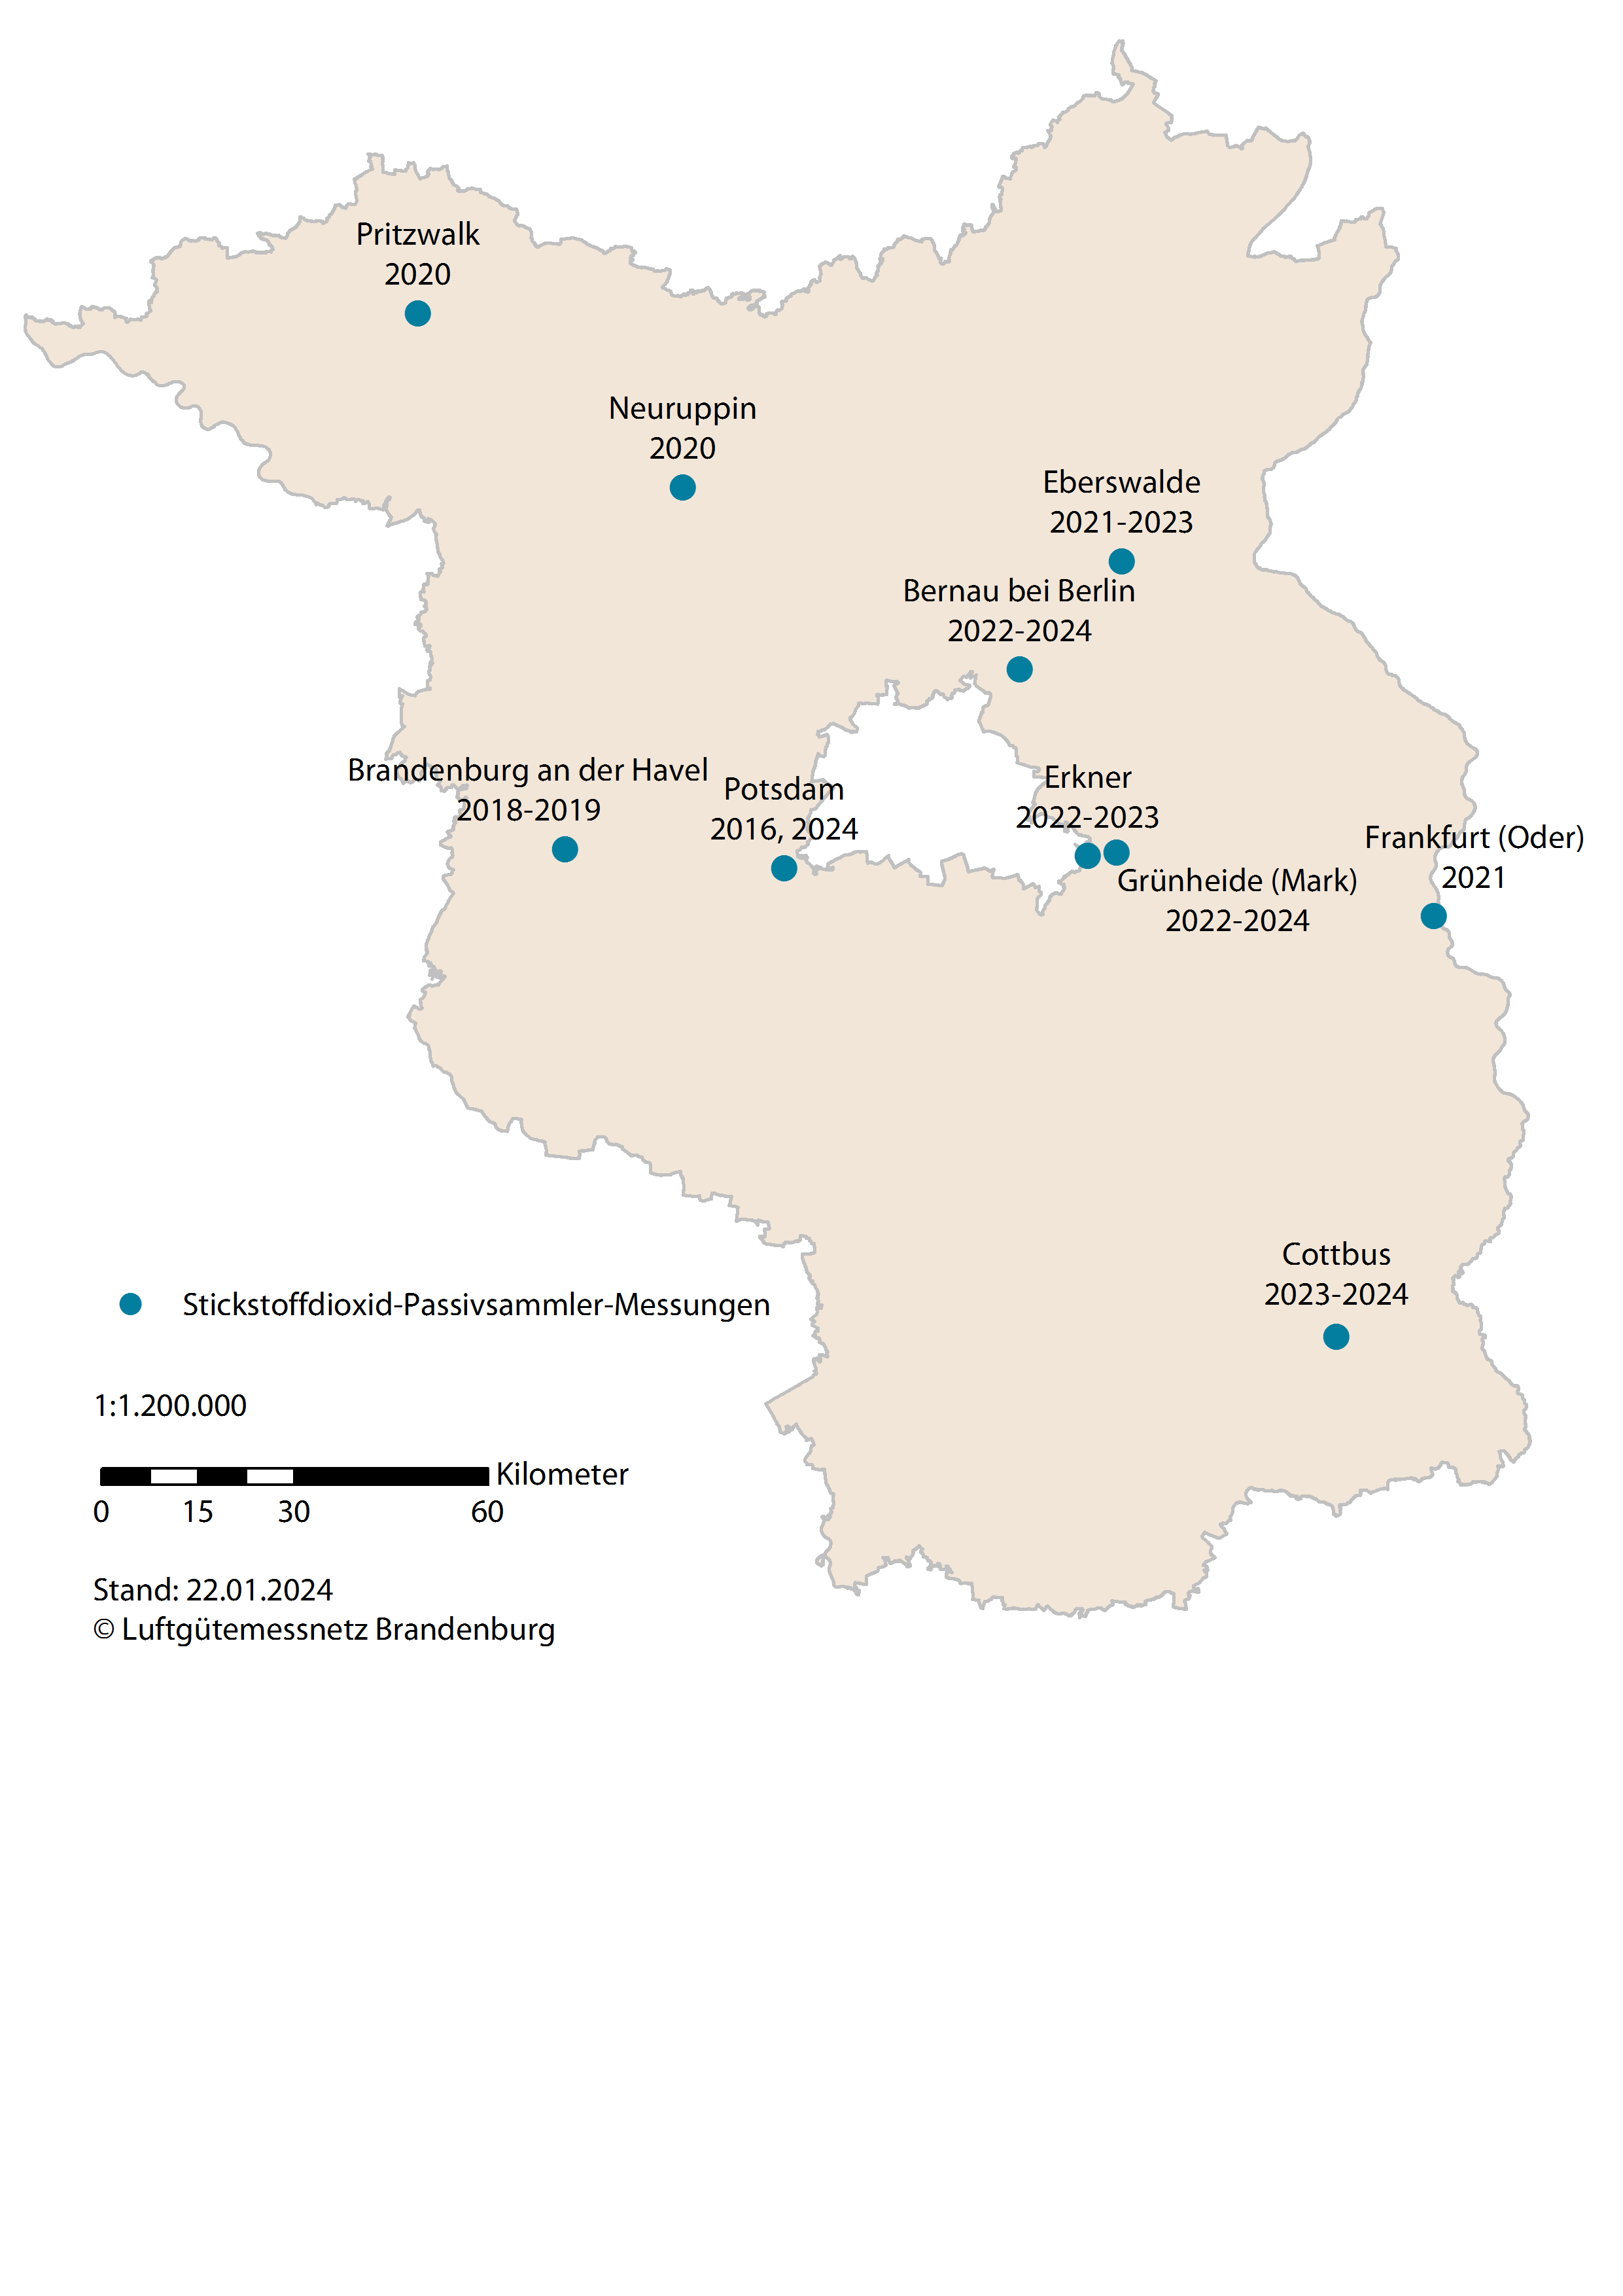 Eine Karte des Landes Brandenburg zeigt alle Standorte, an denen das Landesamt für Umwelt NO2-Passivsammlermesskampagnen durchführt oder durchgeführt hat.